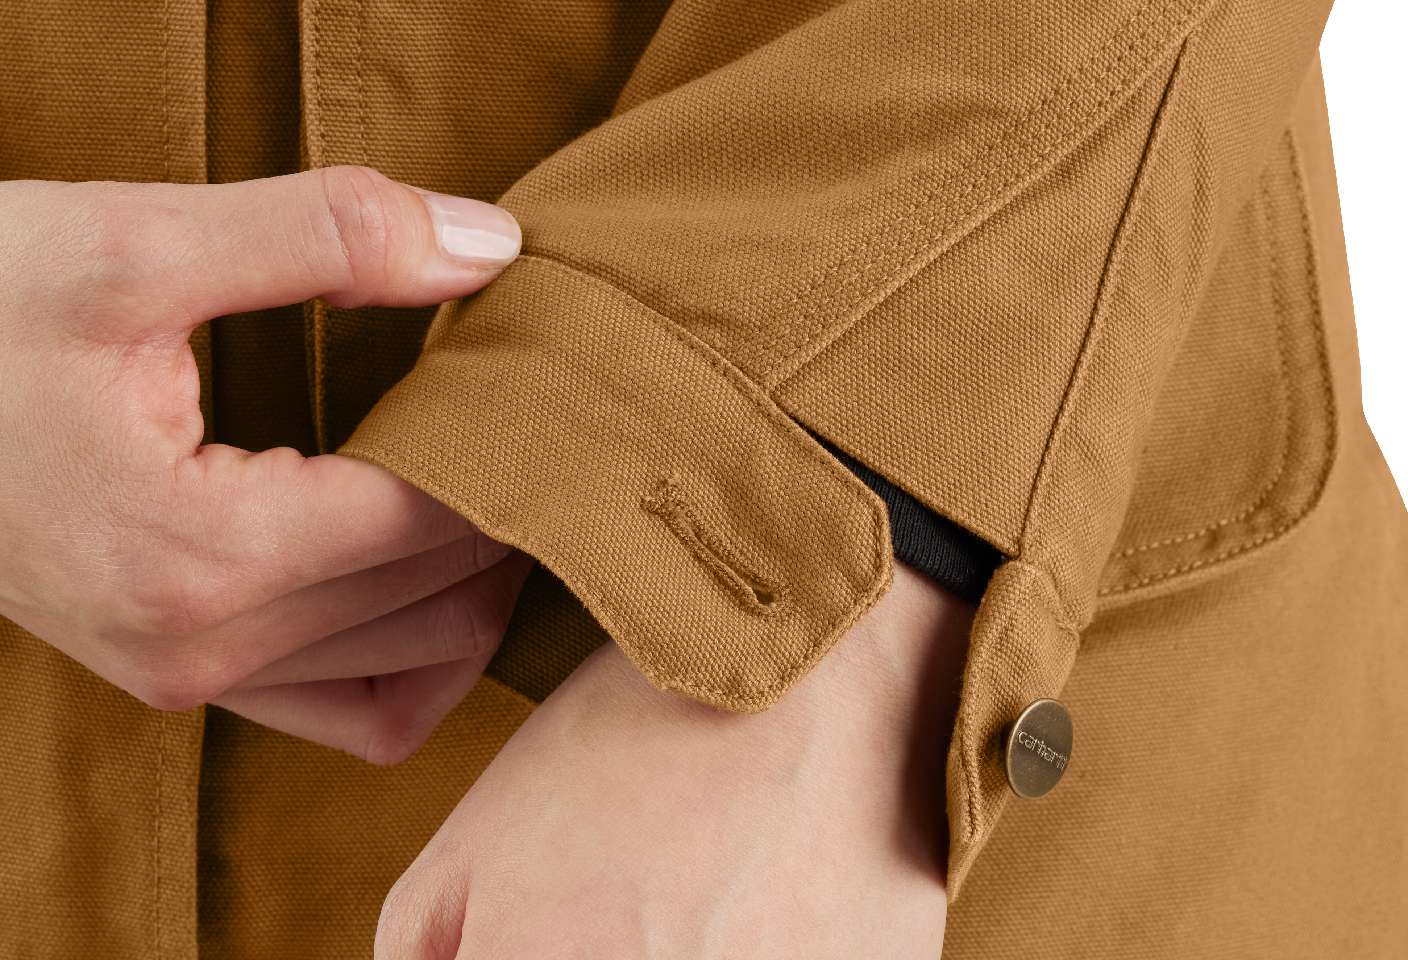 Snap-button adjustable cuffs.